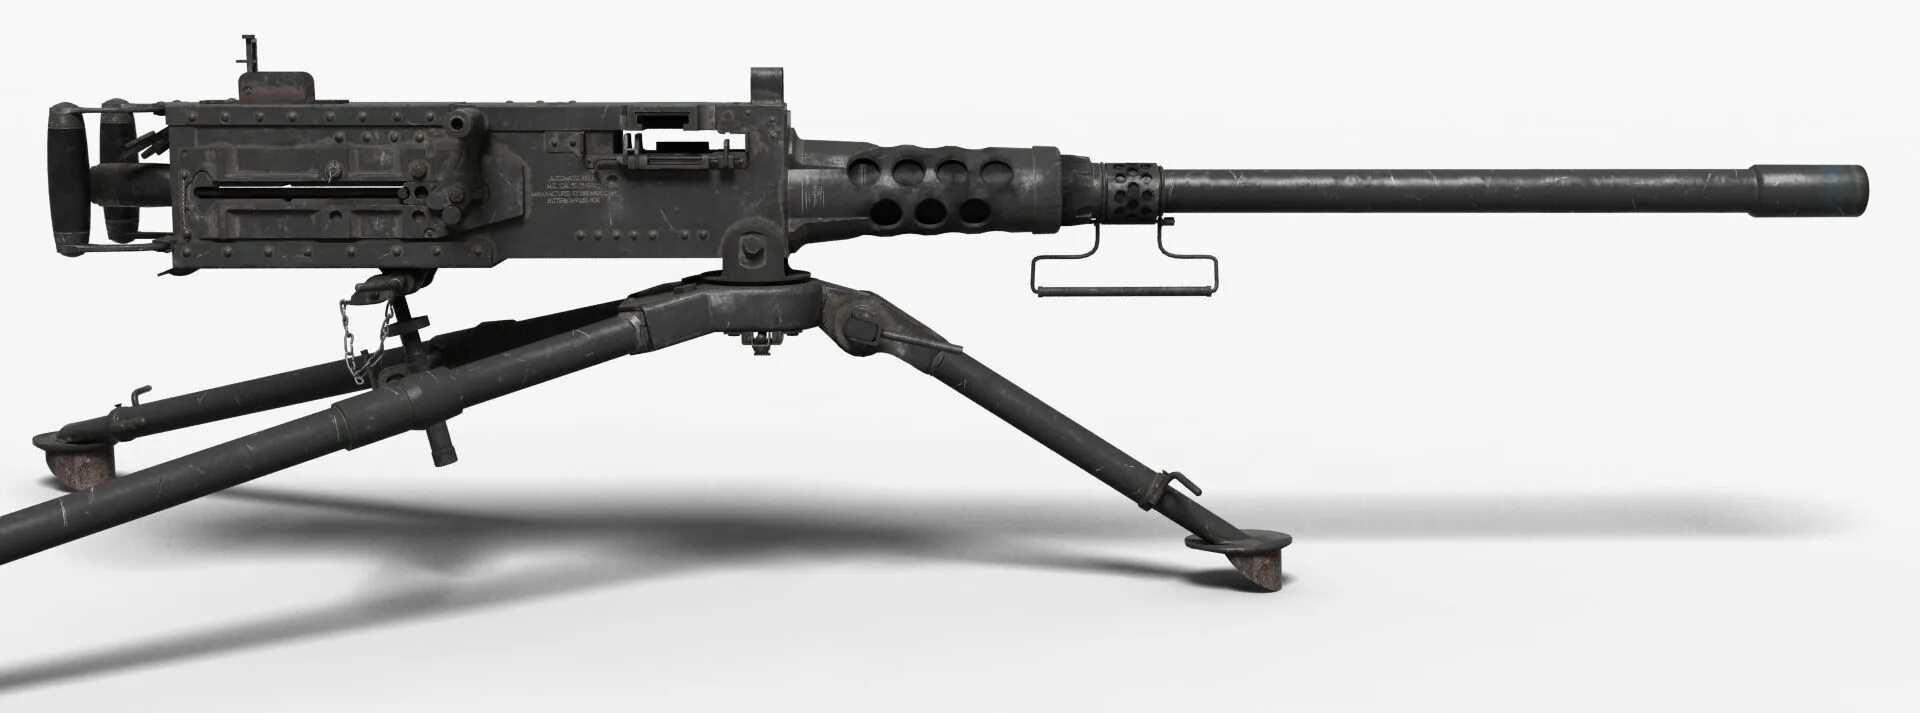 2.12 7. Крупнокалиберный пулемет Браунинг м2. Пулемёт Браунинг м2 12.7 мм. Пулемёт Браунинг м2 50 калибра. M2 Browning калибра 50.